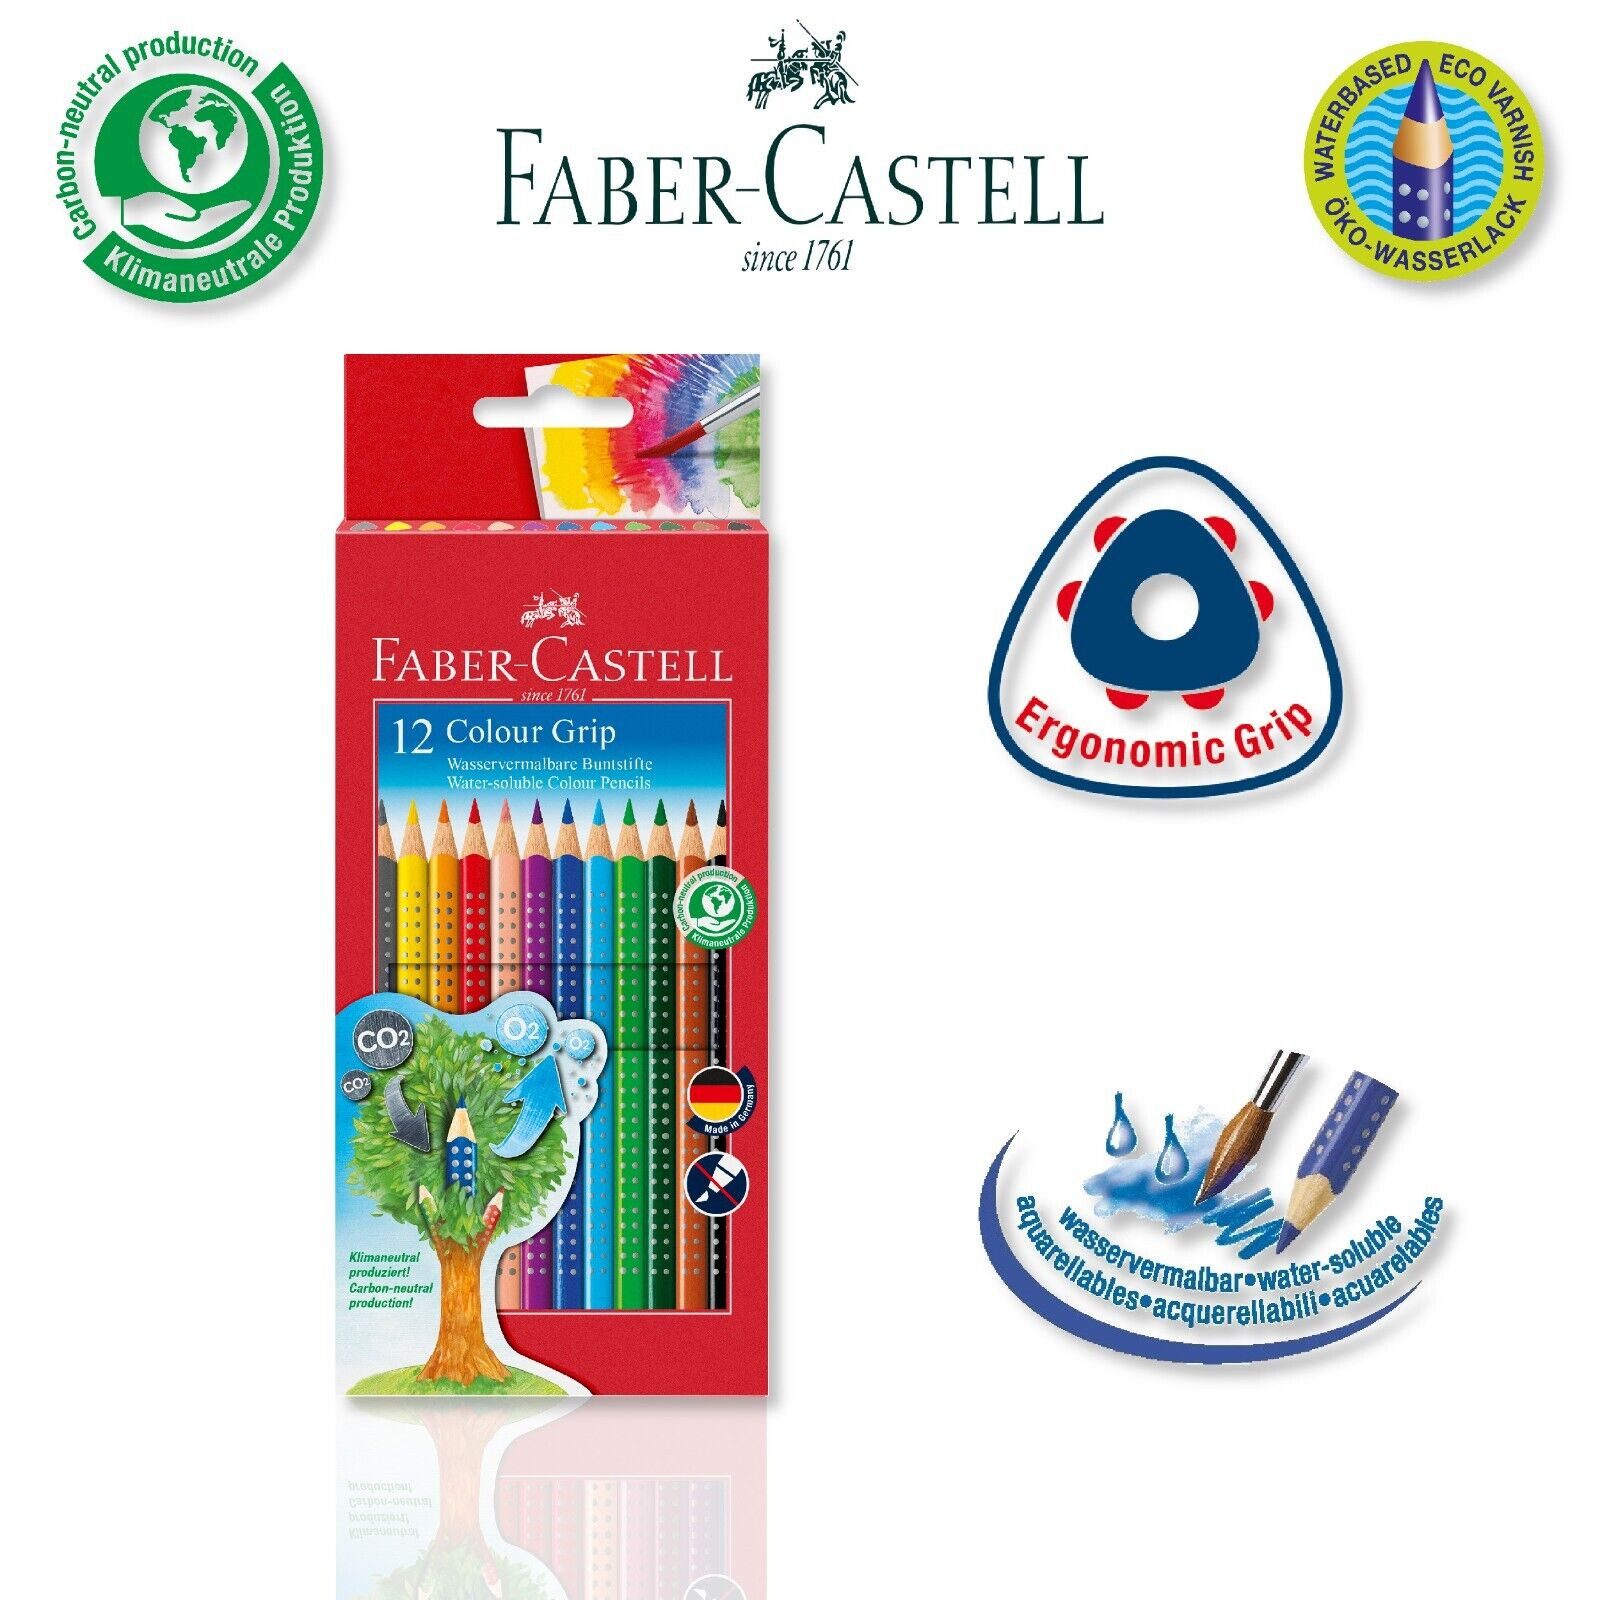 Faber-Castell Buntstift Colour Grip, 12 verschiedene Farben im Kartonetui mit Soft-Grip-Zone